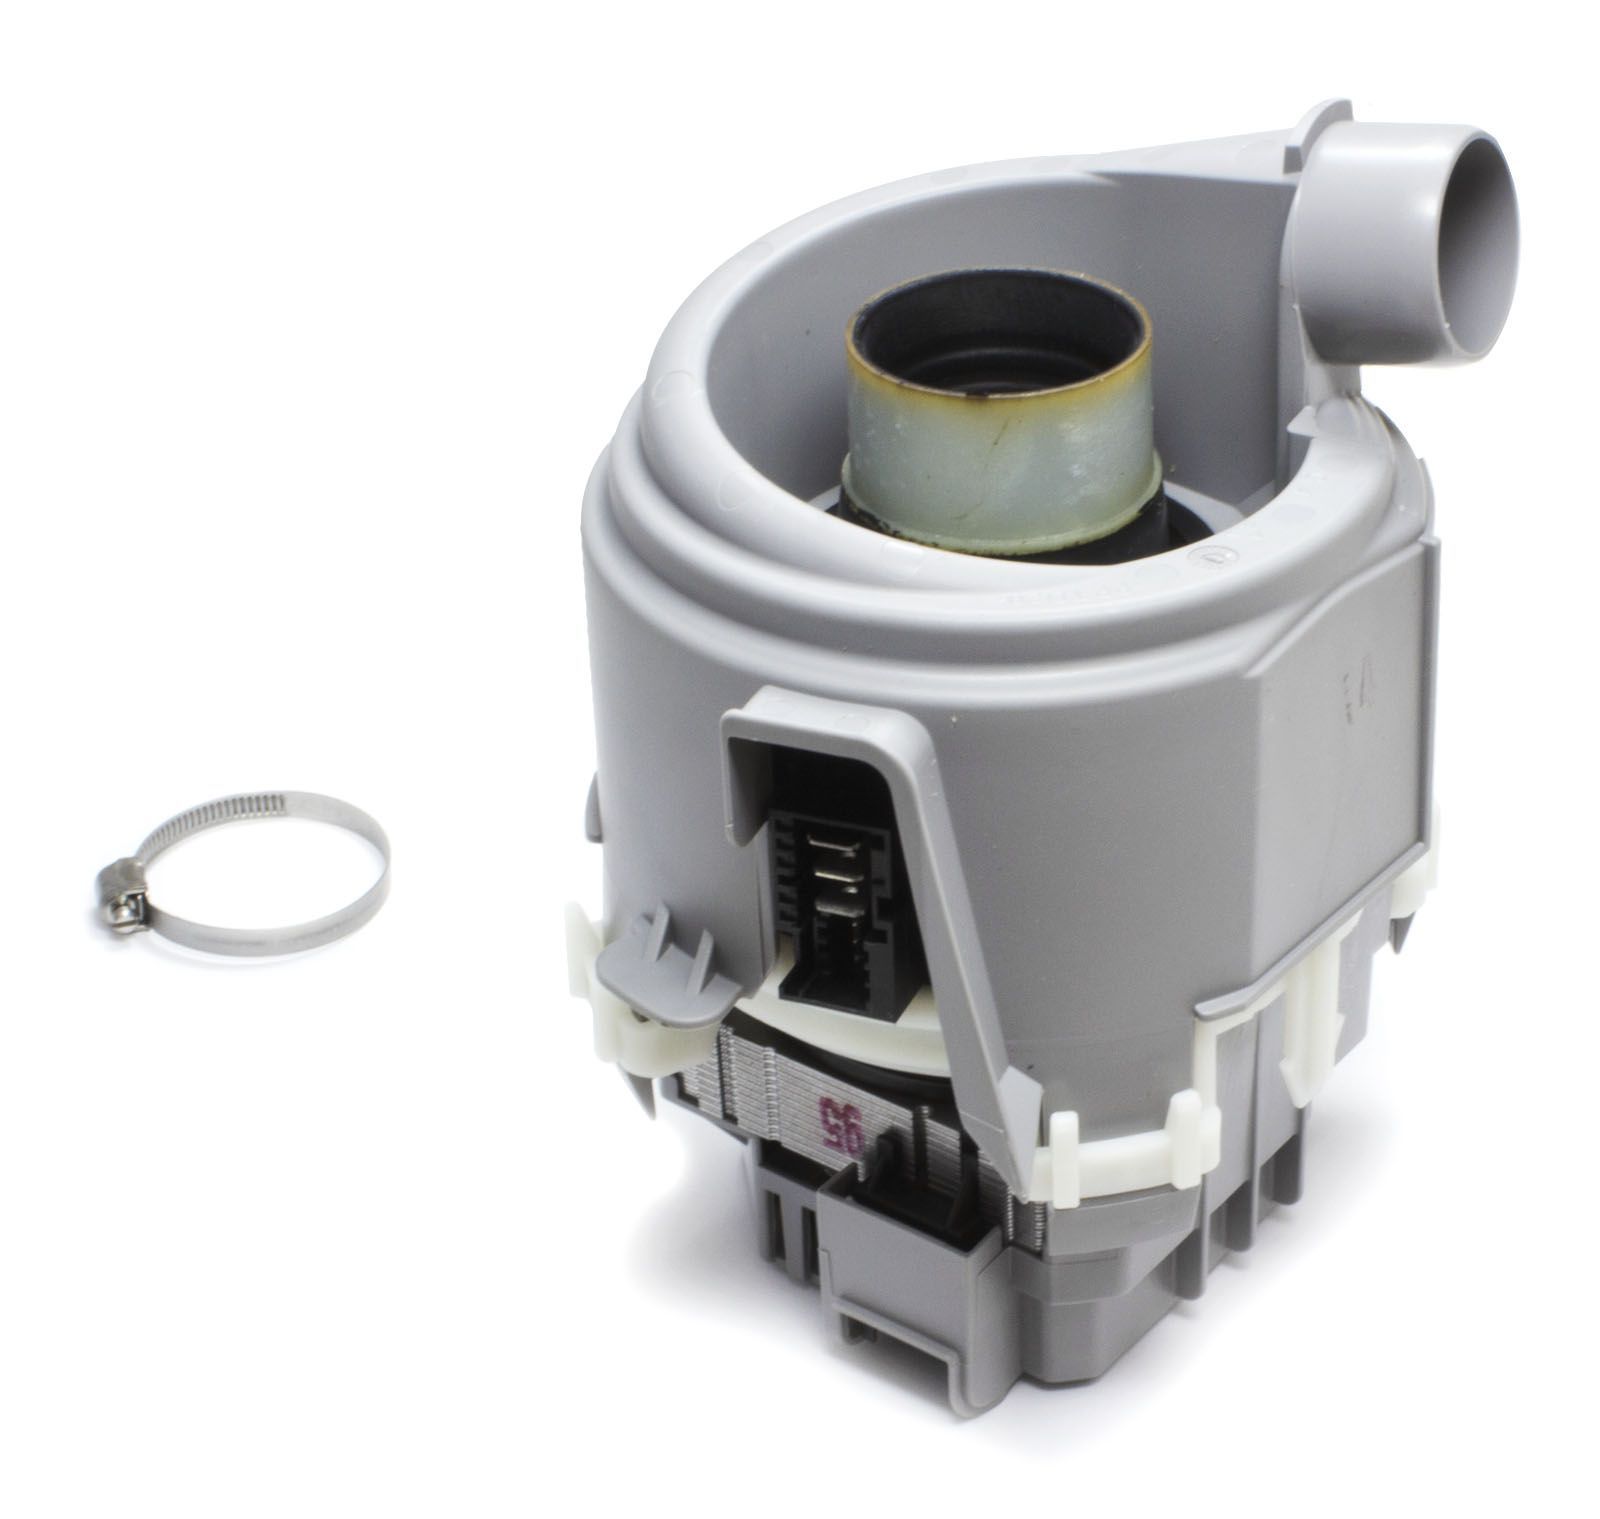 Heat Circulation Pump for Bosch Siemens Dishwashers - 00651956 BSH - Bosch / Siemens